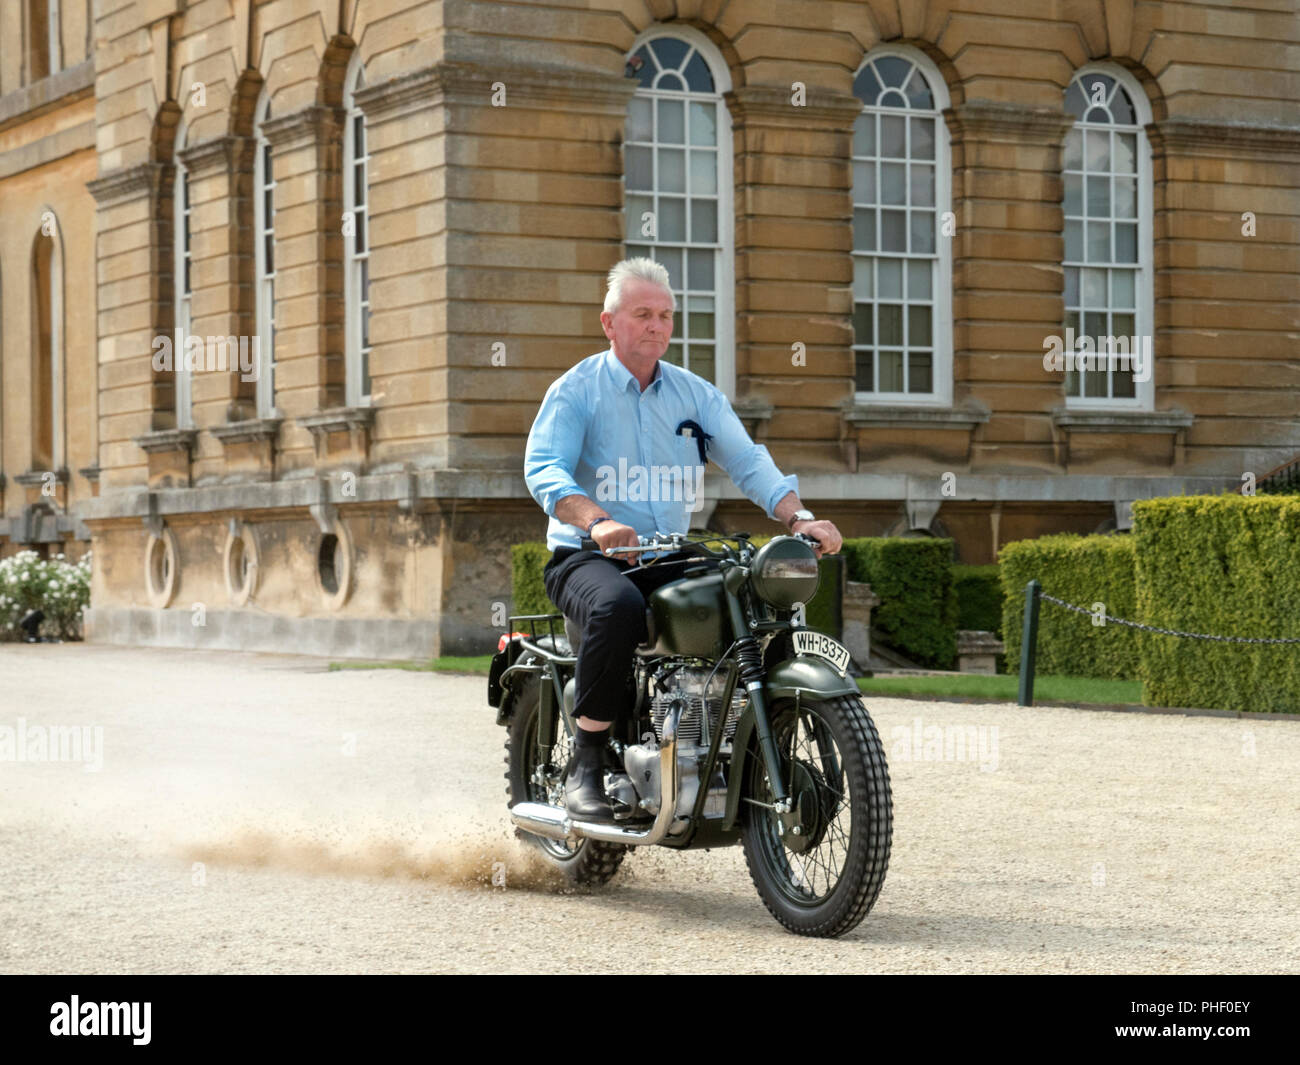 1962 Triumph TR6, moto bike célèbre montée par Steve McQueen dans le film la Grande Évasion. 2018 Salon prive à Blenheim Palace Woodstock UK Banque D'Images